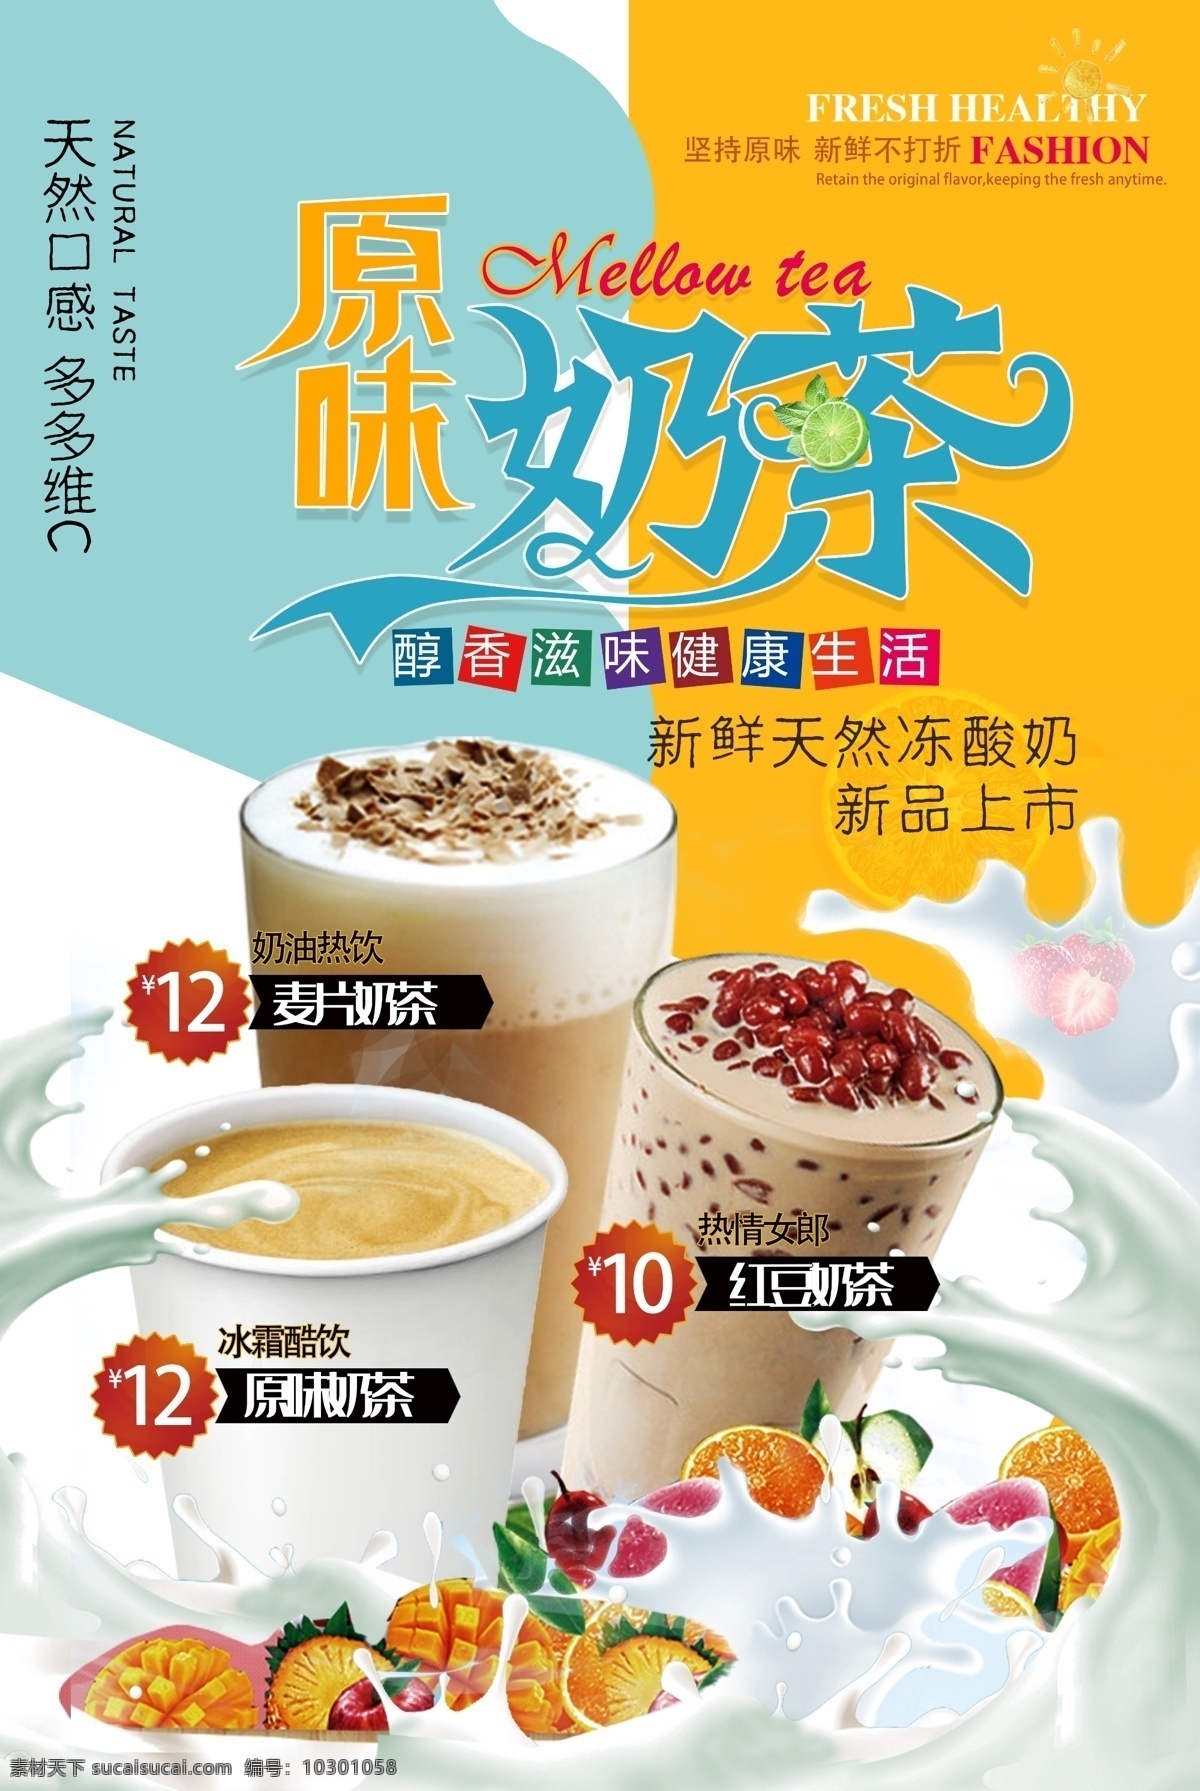 原味奶茶图片 奶茶 原味奶茶 饮品 早餐 美食 宣传页 广告 海报 分层